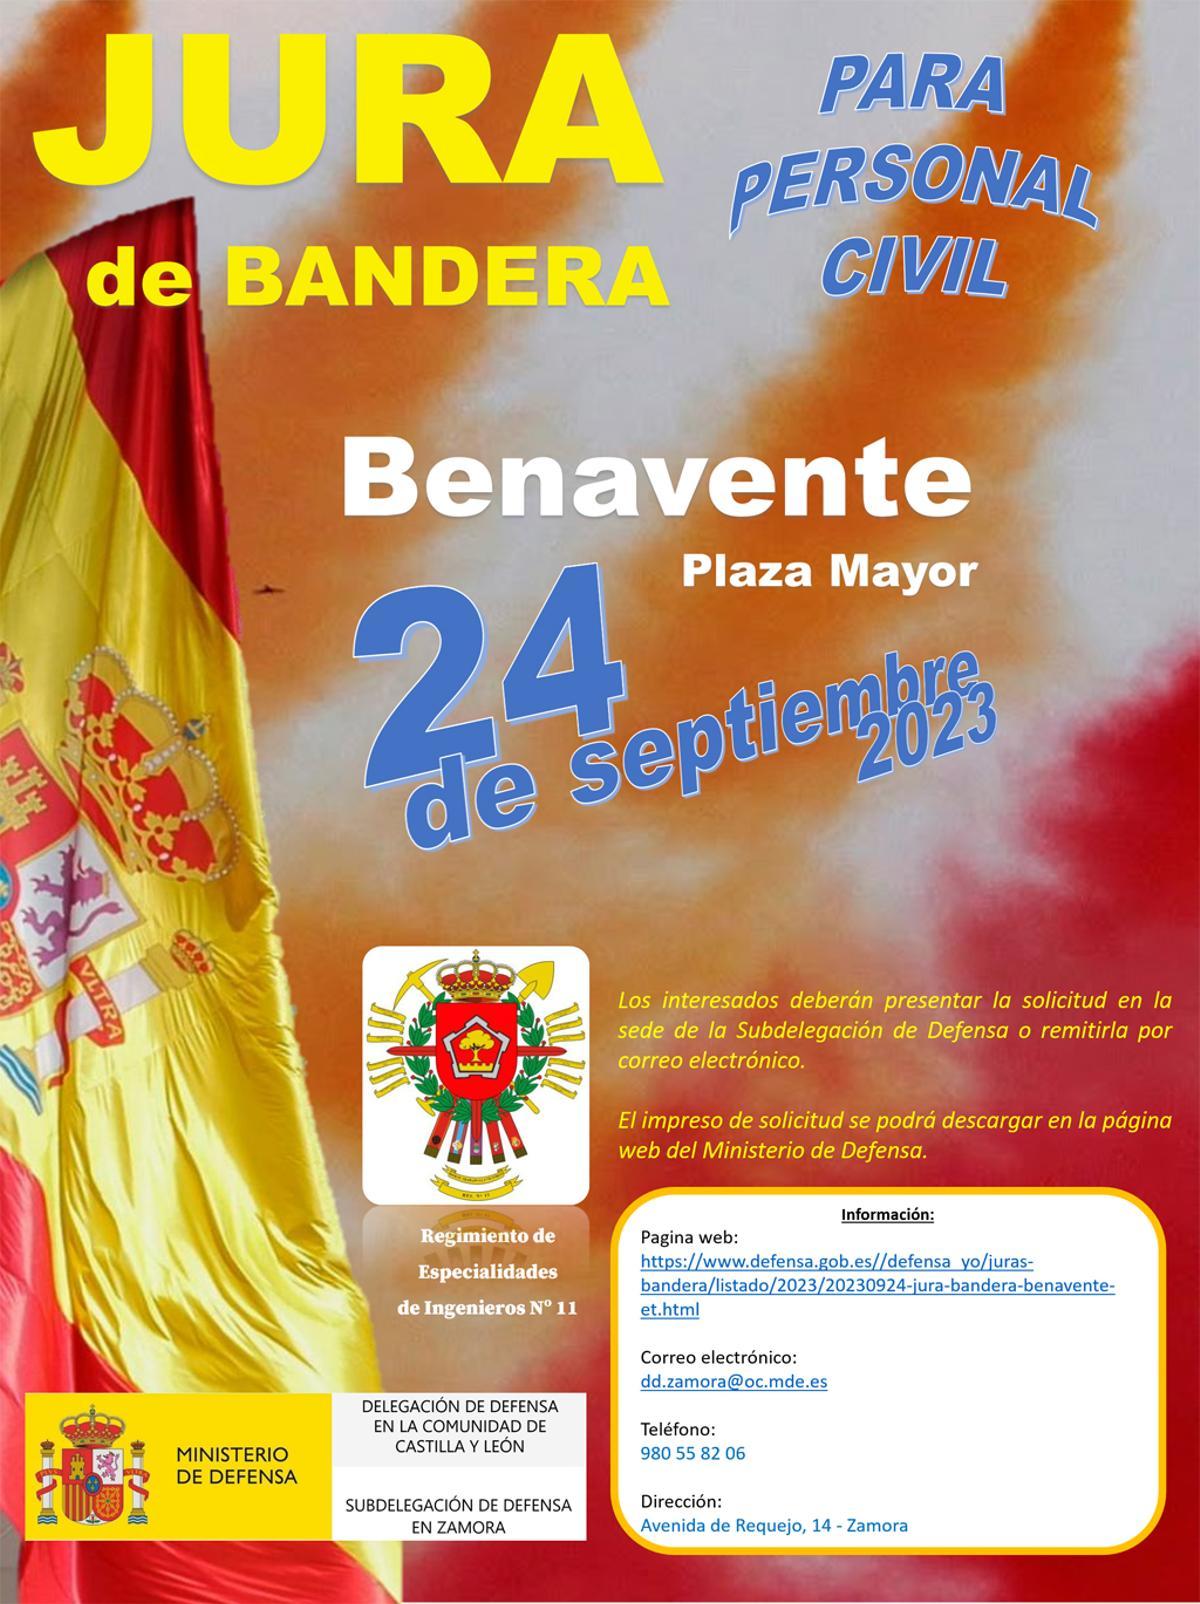 Cartel de la Jura de Bandera para personal civil en Benavente.